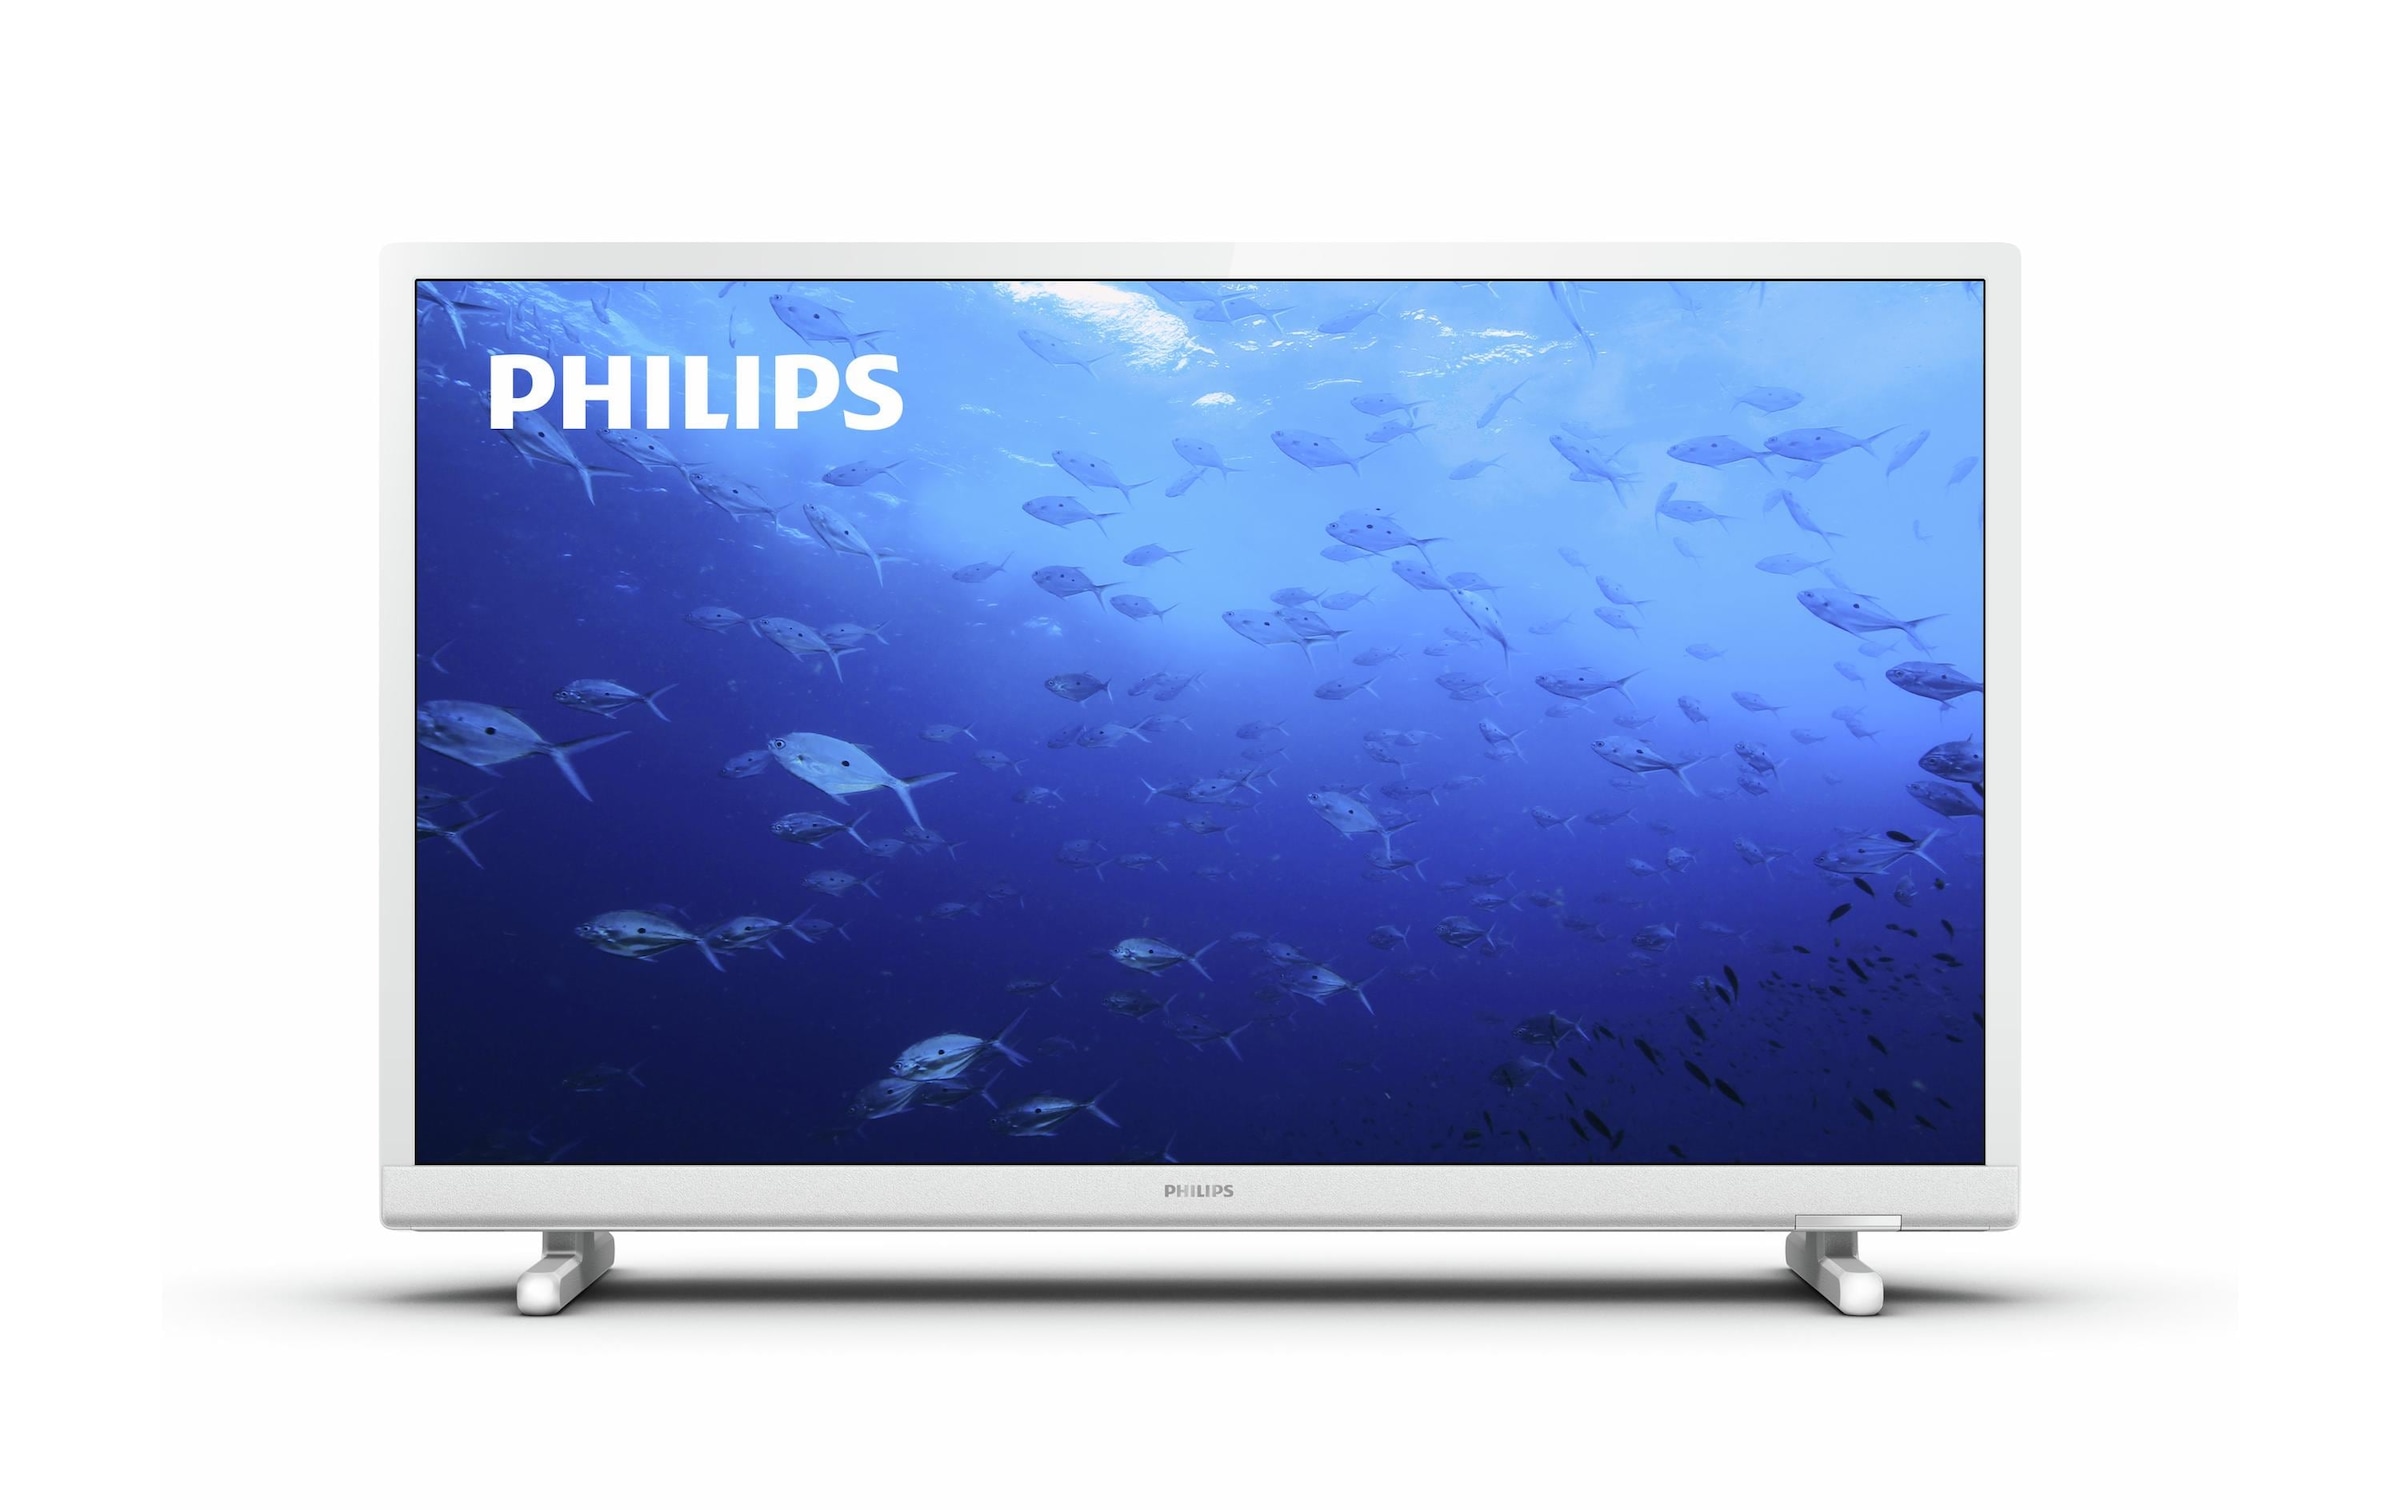 TV LED 32 (81,28 cm) Philips 32PHS6808/12, HD, Smart TV